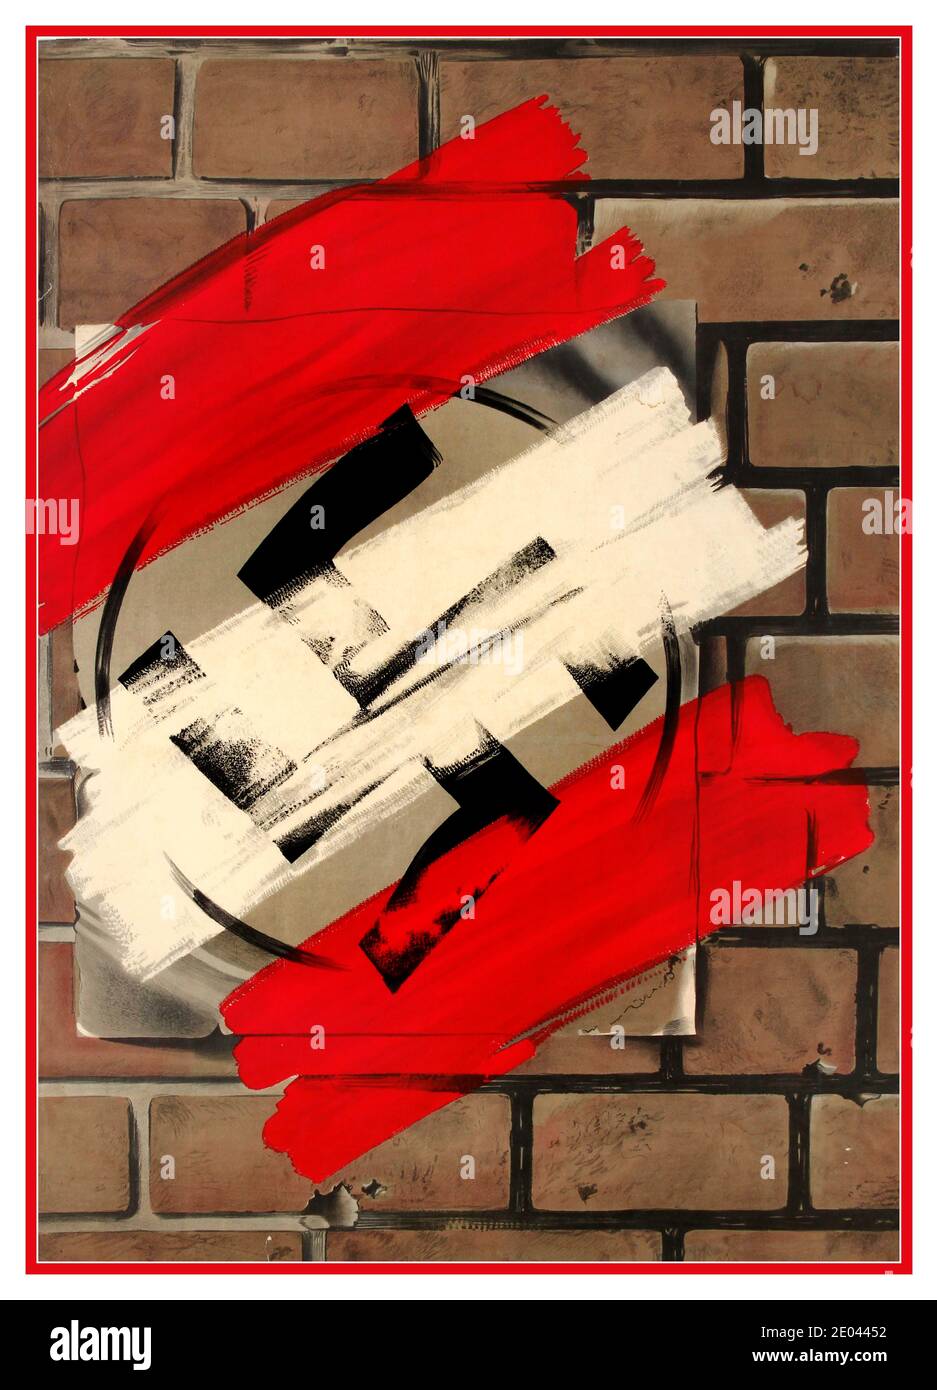 DANIMARCA seconda guerra mondiale d'epoca secondo guerra mondiale poster di propaganda anti-nazista che mostra un poster di swastika nazista su un muro di mattoni coperto da strisce di vernice rossa e bianca per simboleggiare la bandiera danese e la vittoria totale su nazisti e nazisti tedeschi. Danimarca 1945 Foto Stock